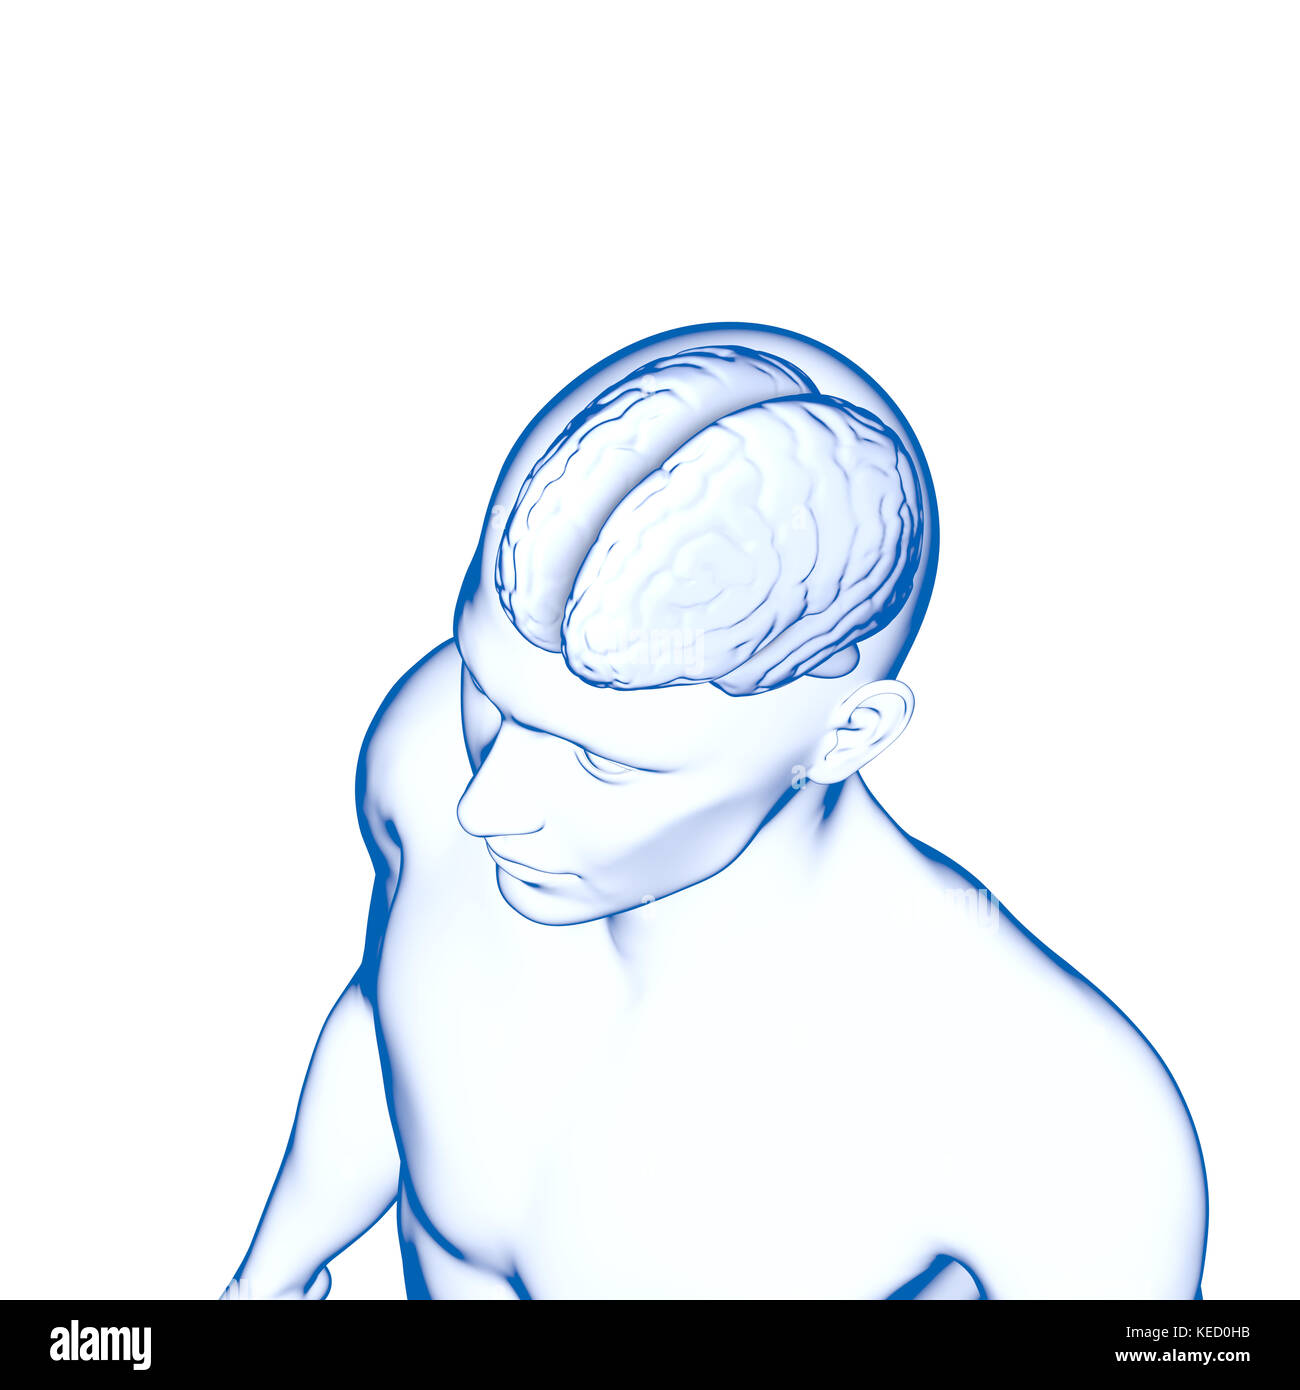 Menschliche Gehirn, Anatomie, Kopf Stockfoto